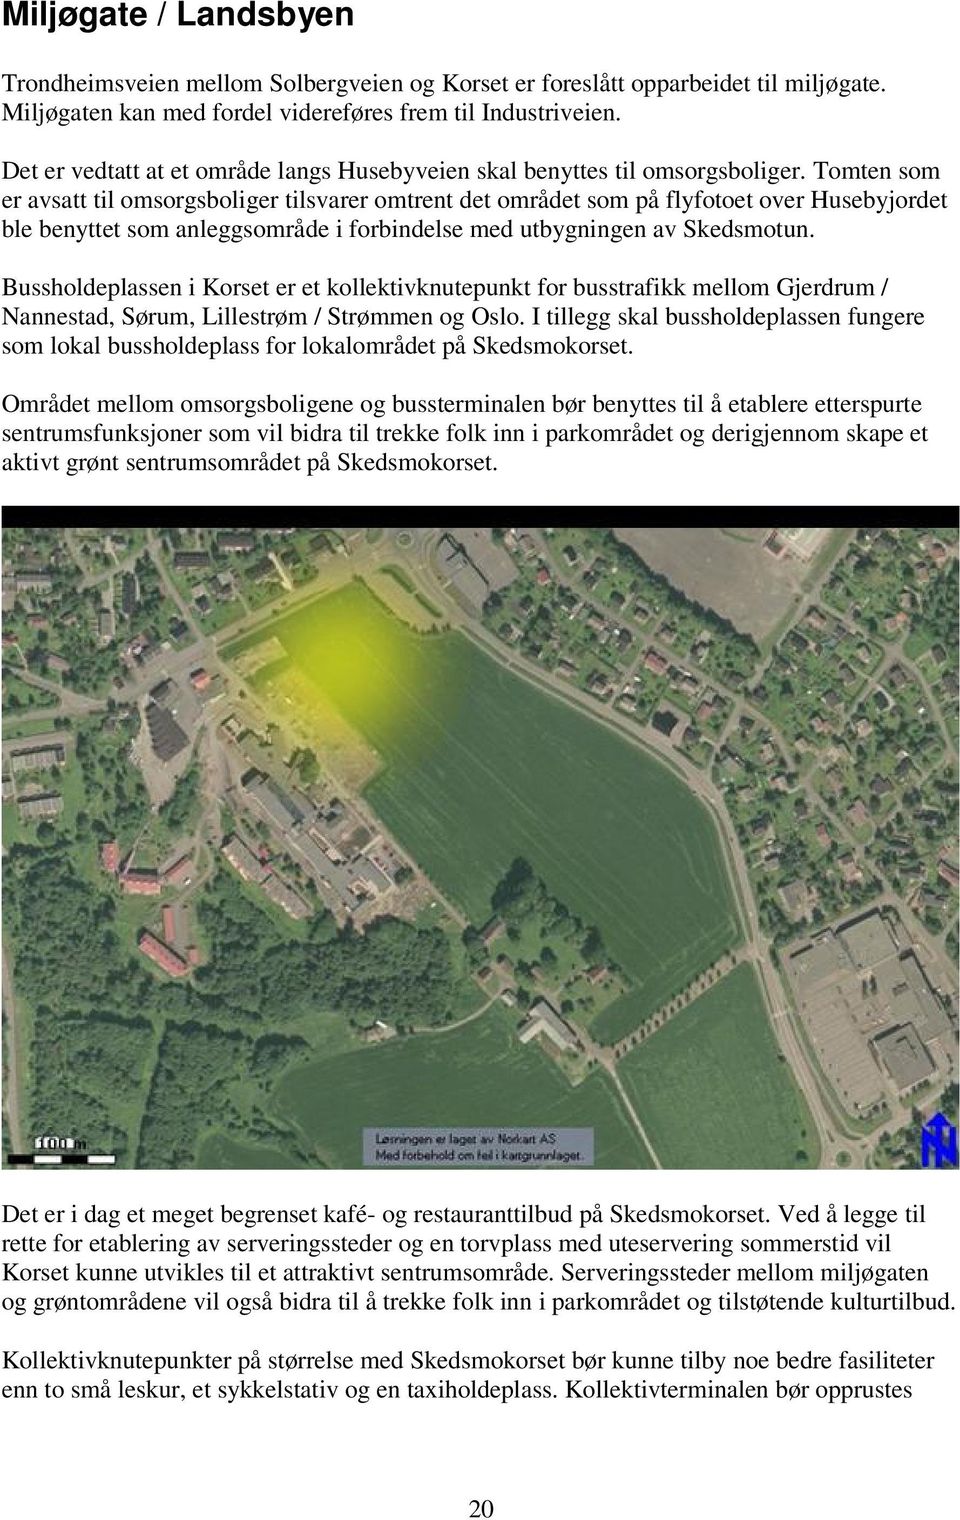 Tomten som er avsatt til omsorgsboliger tilsvarer omtrent det området som på flyfotoet over Husebyjordet ble benyttet som anleggsområde i forbindelse med utbygningen av Skedsmotun.